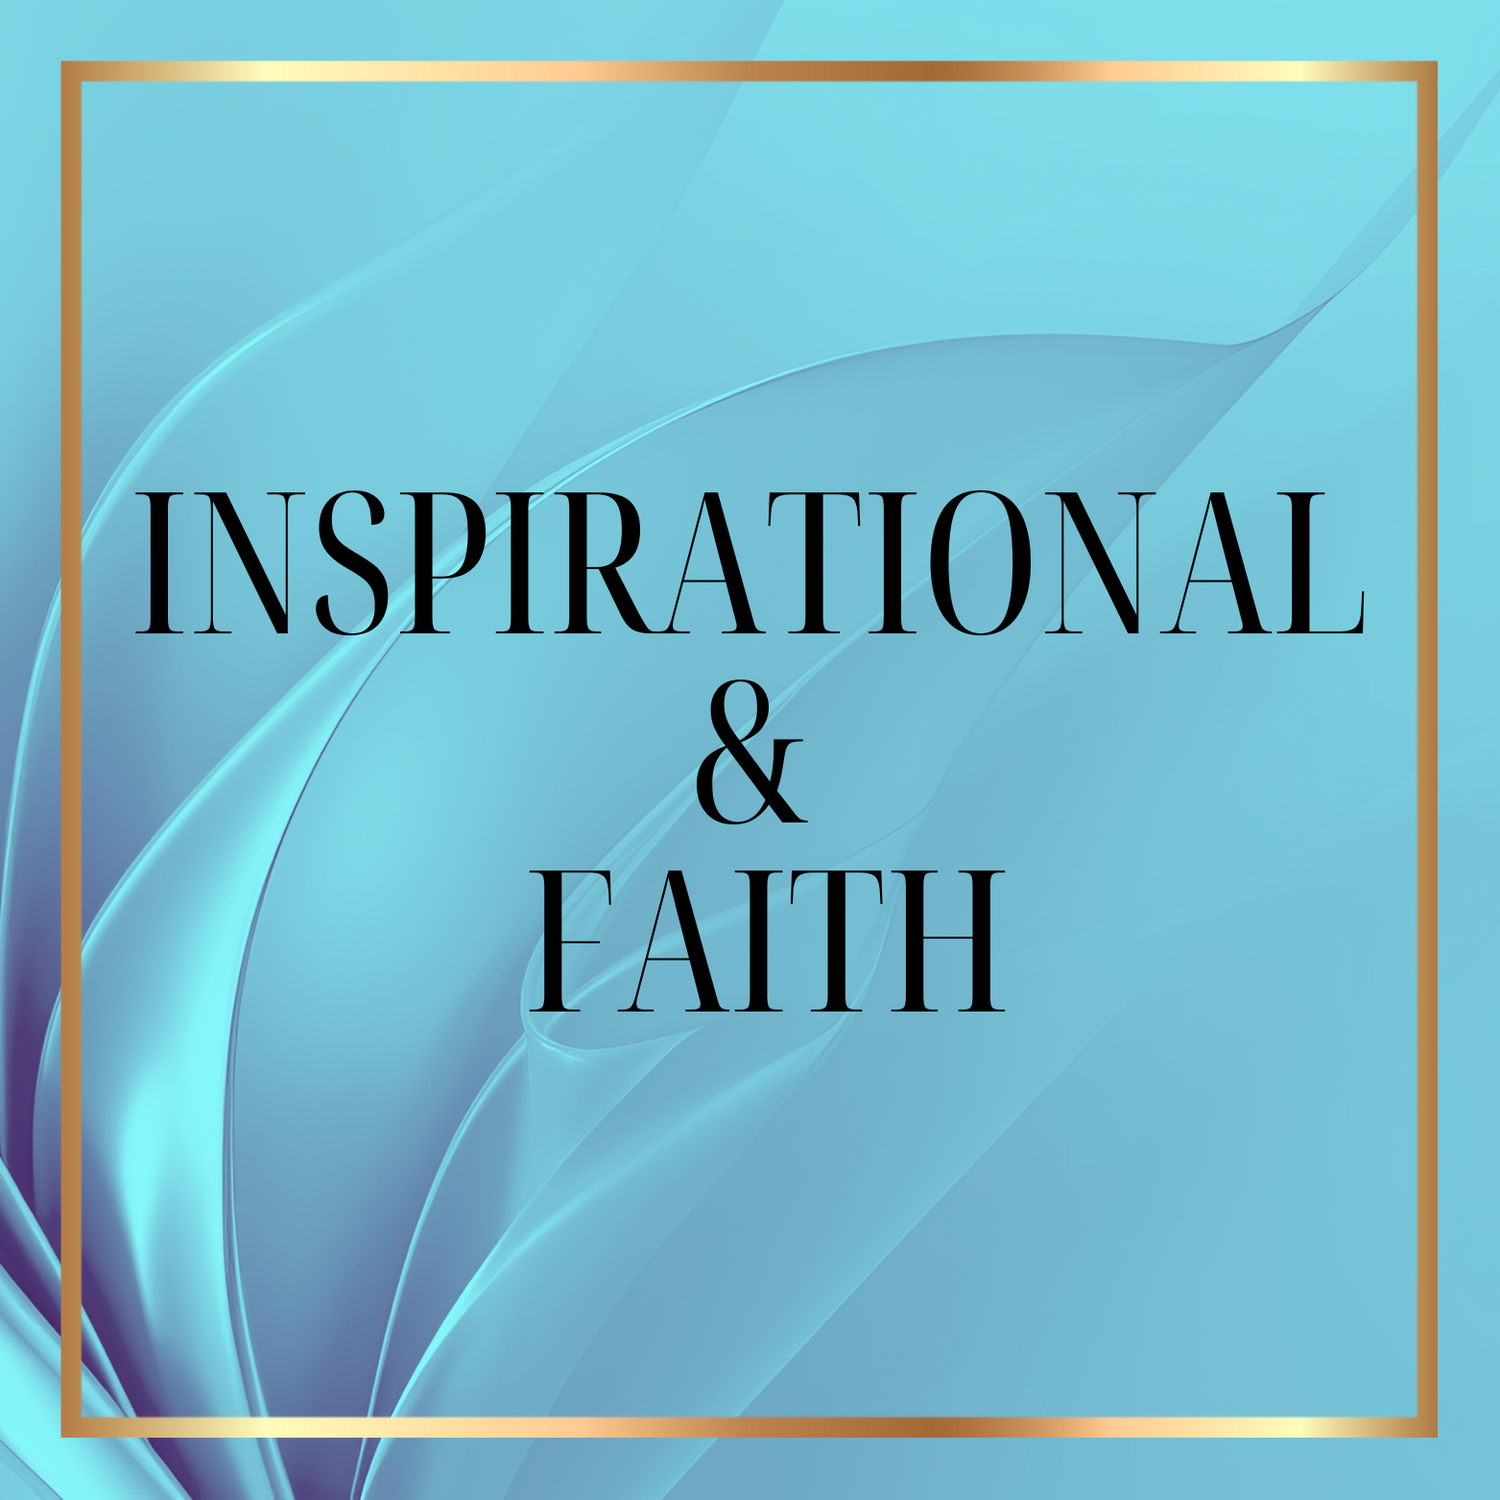 Inspirational & Faith